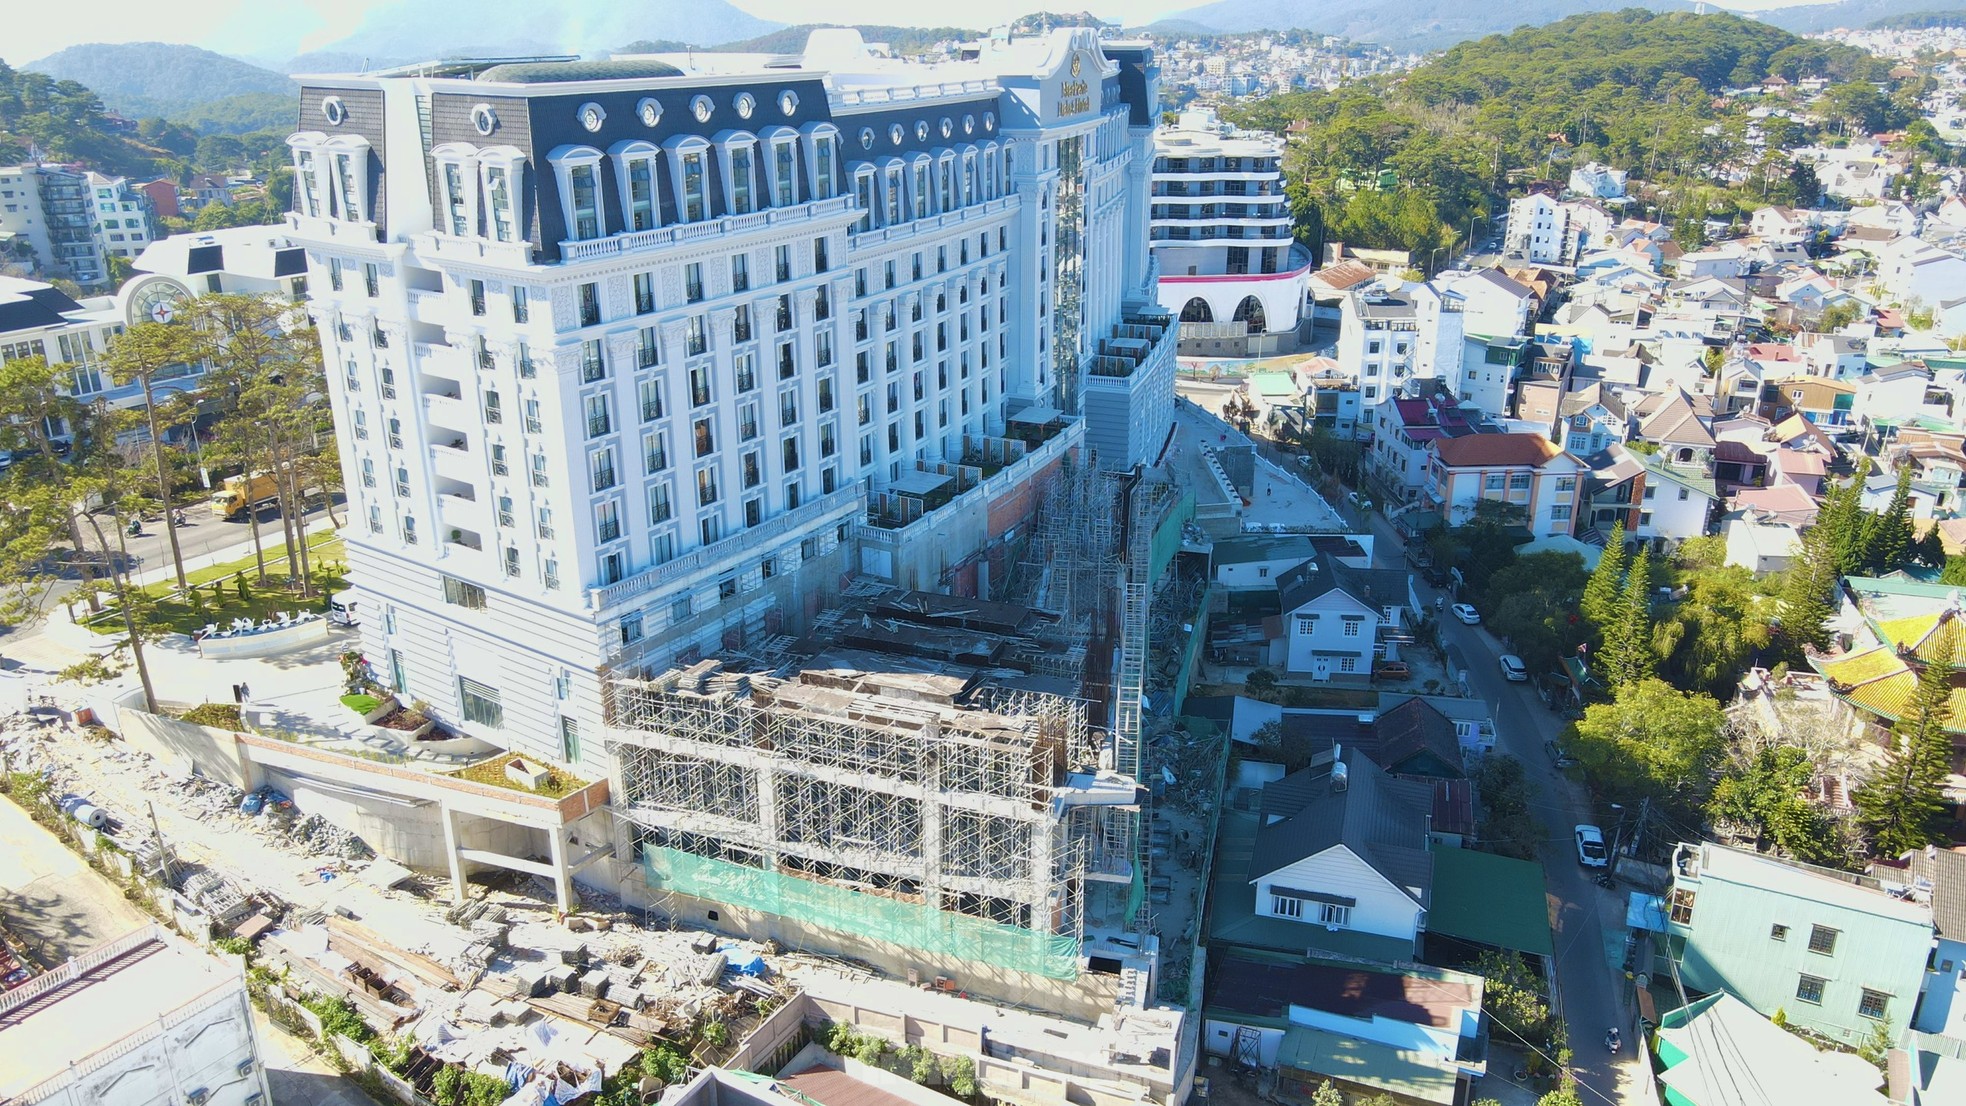 Cận cảnh khách sạn 5 sao lớn nhất Đà Lạt xây vượt phép 4.450m2 - Ảnh 4.